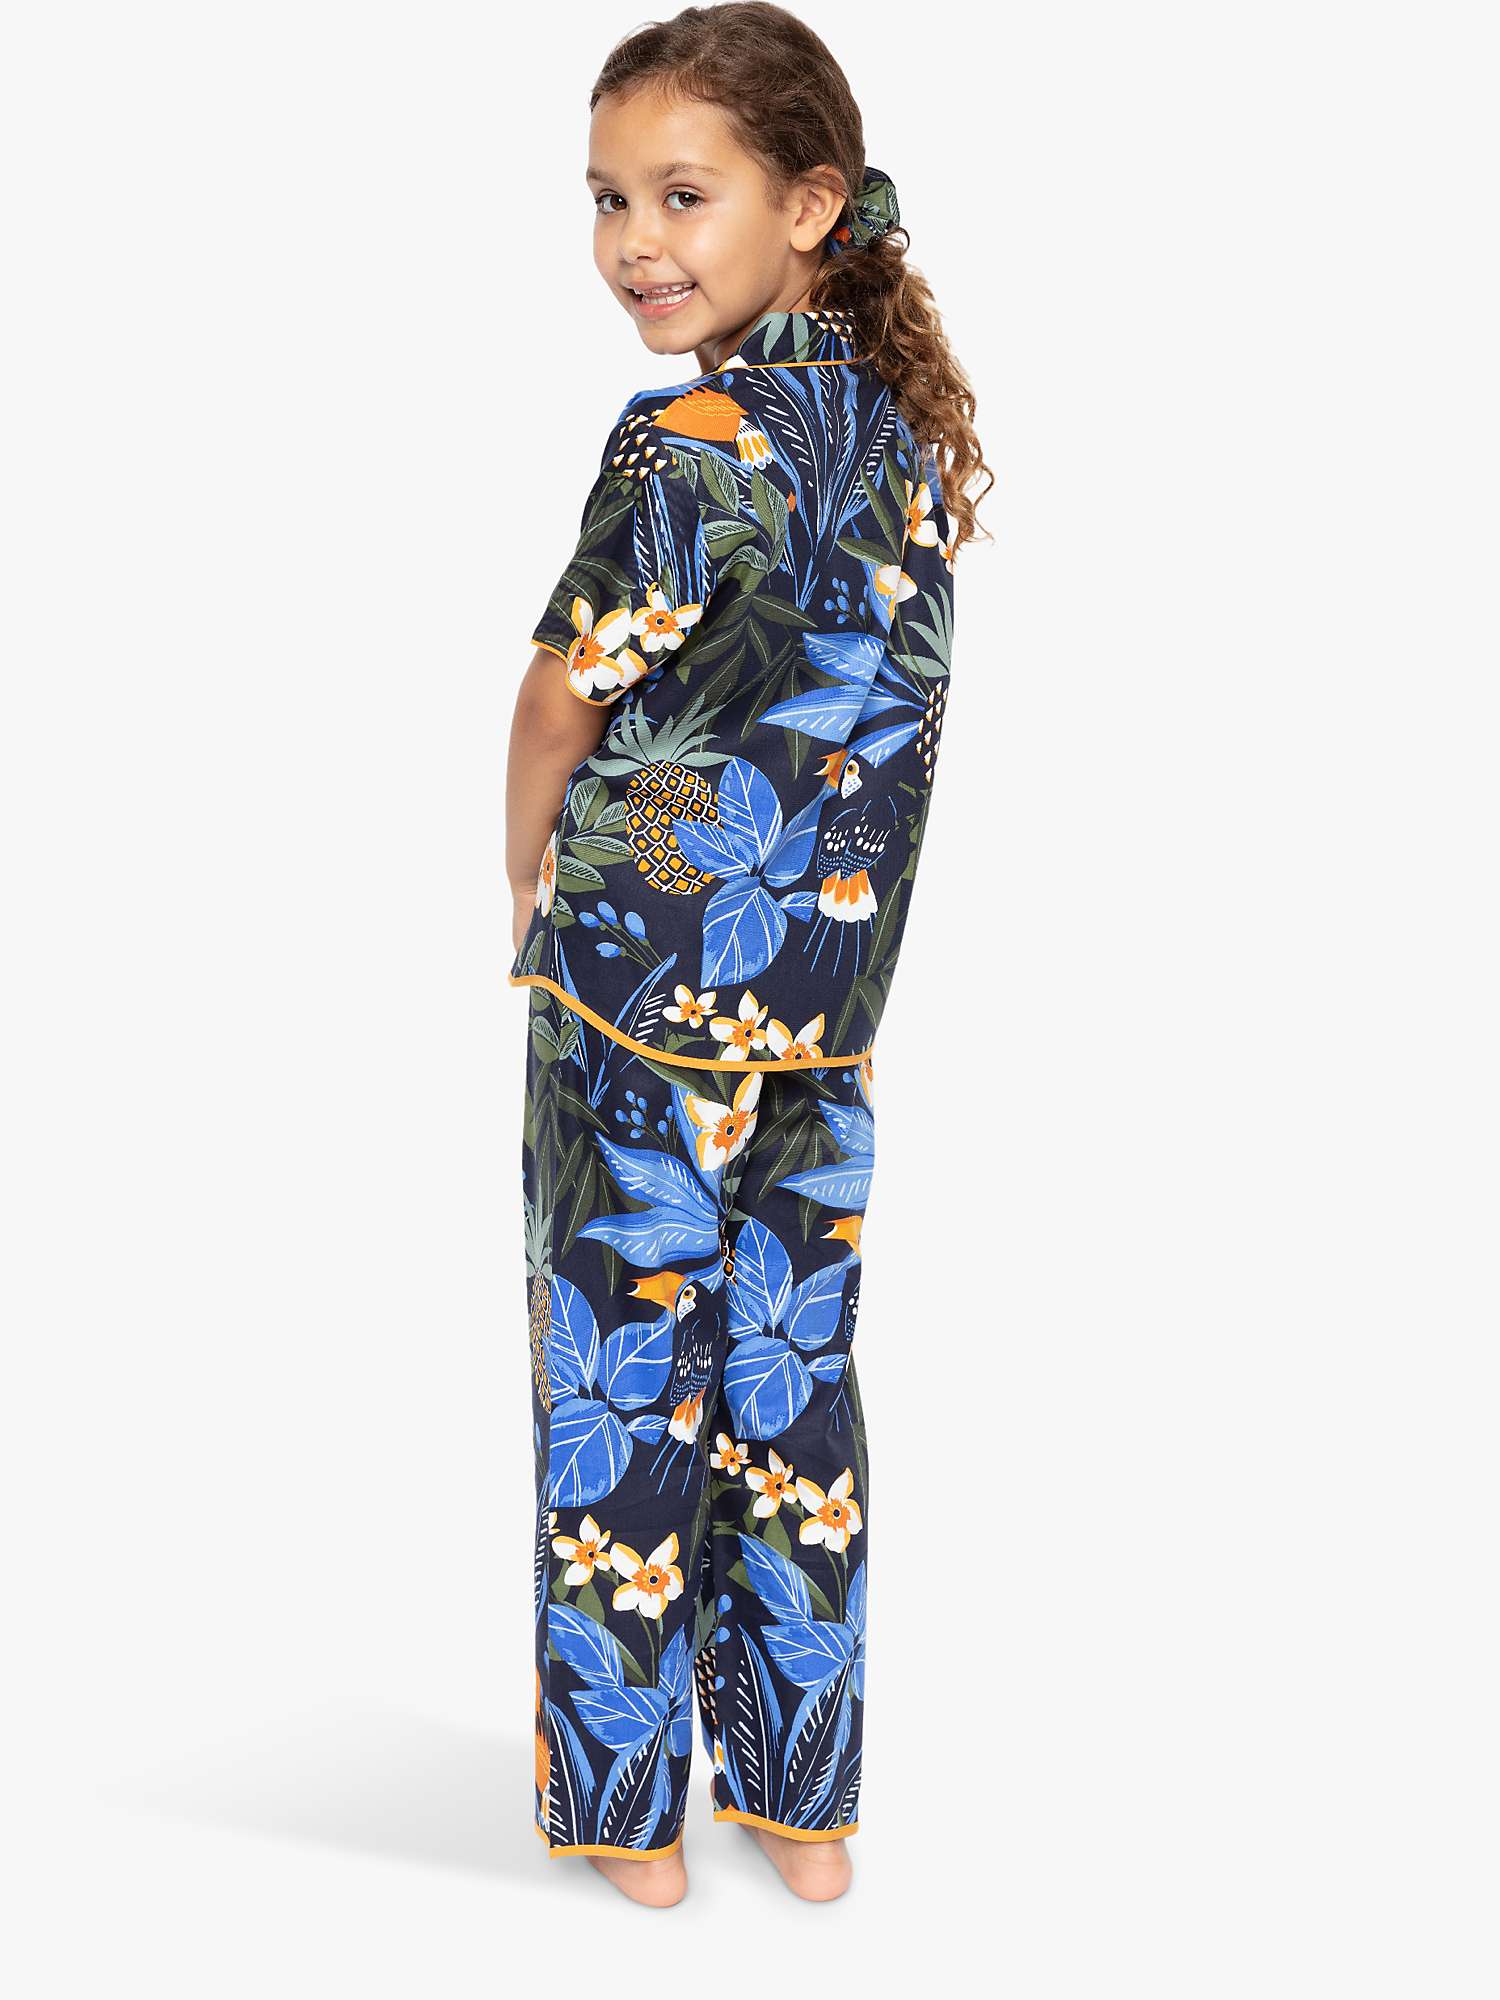 Buy Cyberjammies Kids' Sierra Toucan Print Pyjama Set, Multi Online at johnlewis.com